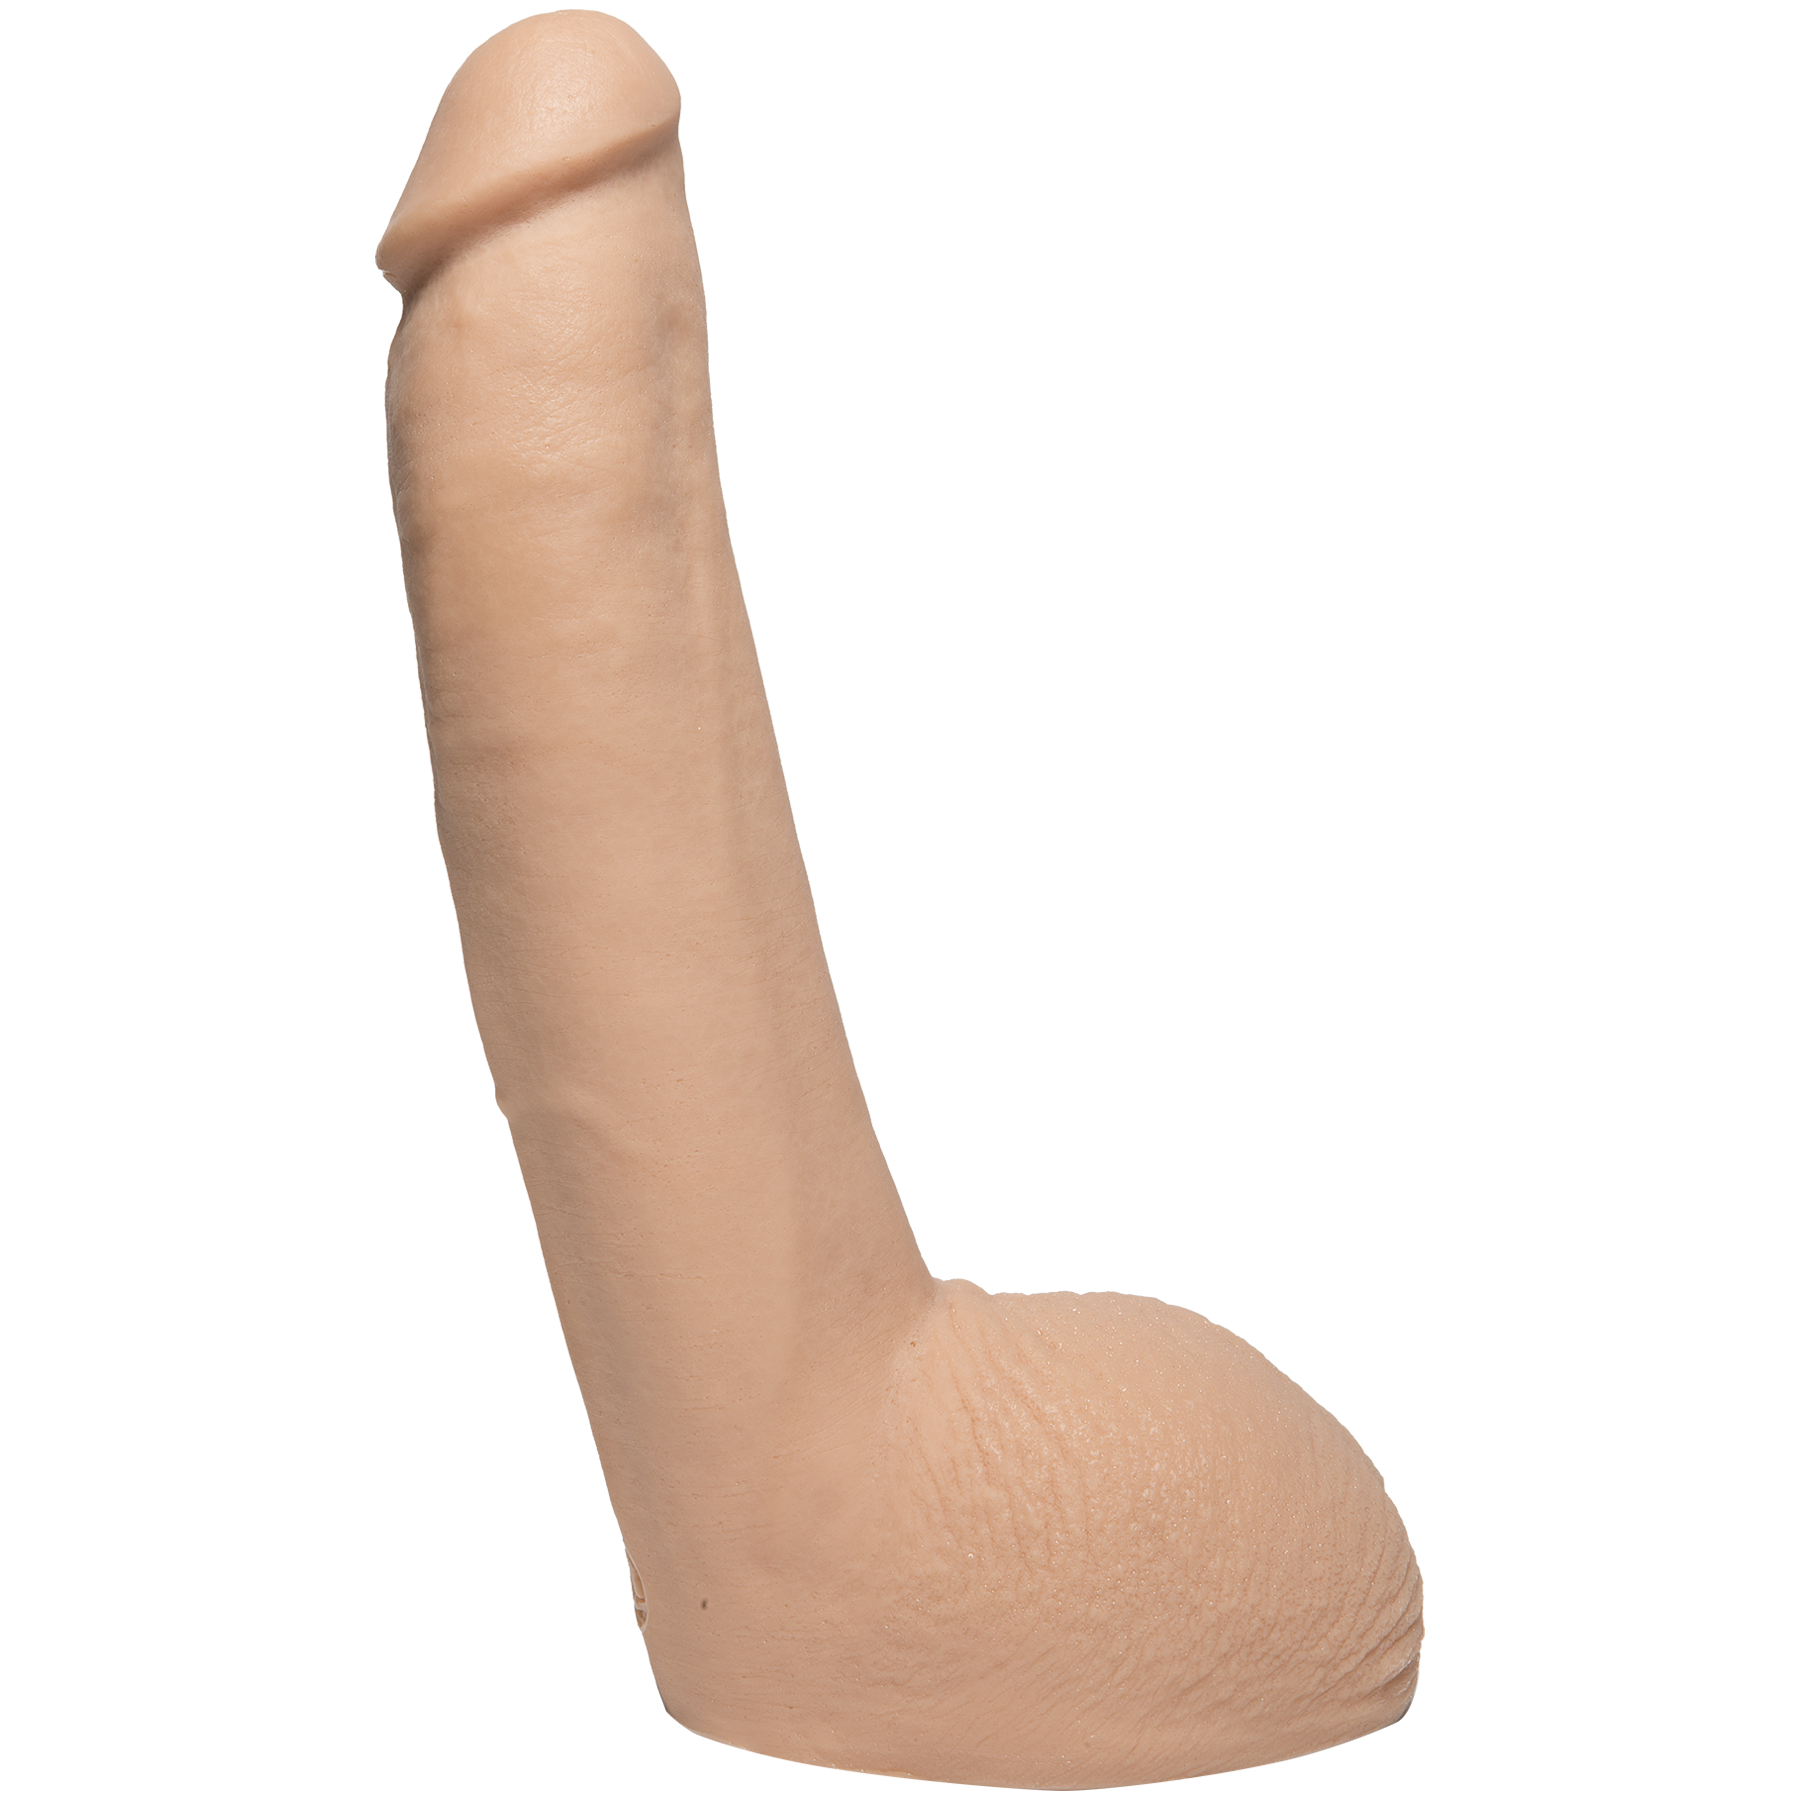 Zi-Zi reccomend new dildo cock inch amazing